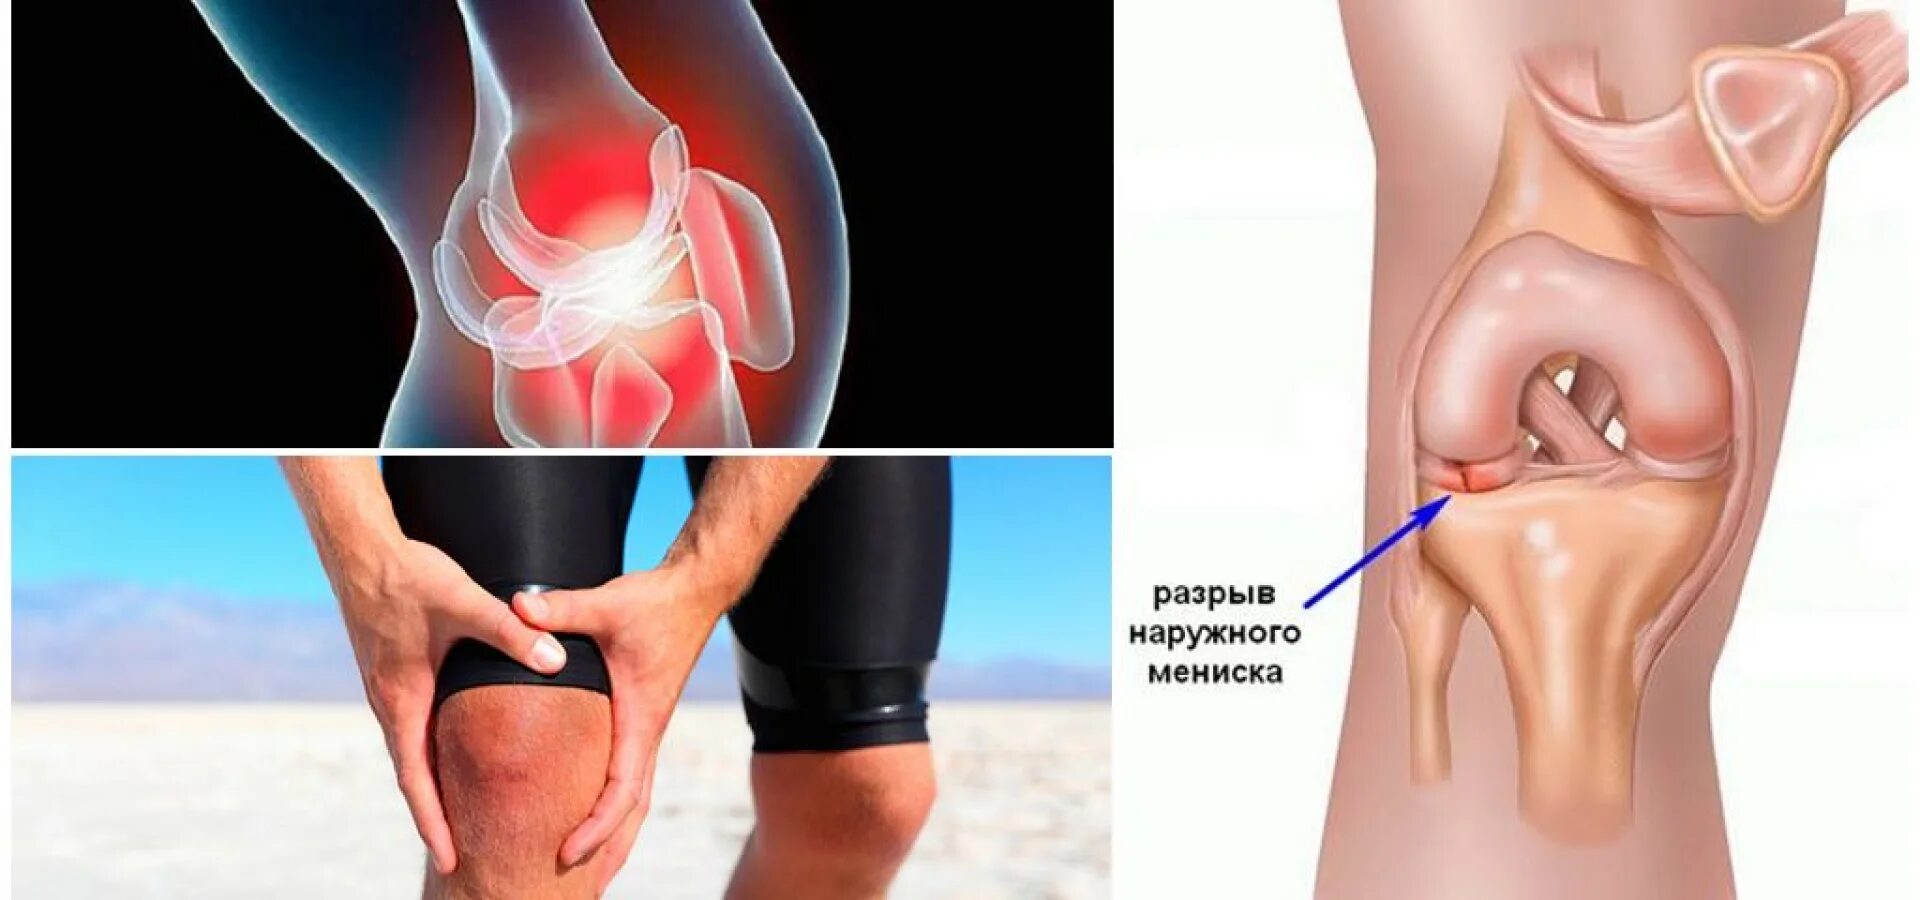 Коленные суставы в брянске. Разрыв мениска коленного. Разрыв мениска коленного сустава. Разрыв коленого сустава Менис. Менископатия коленного сустава.